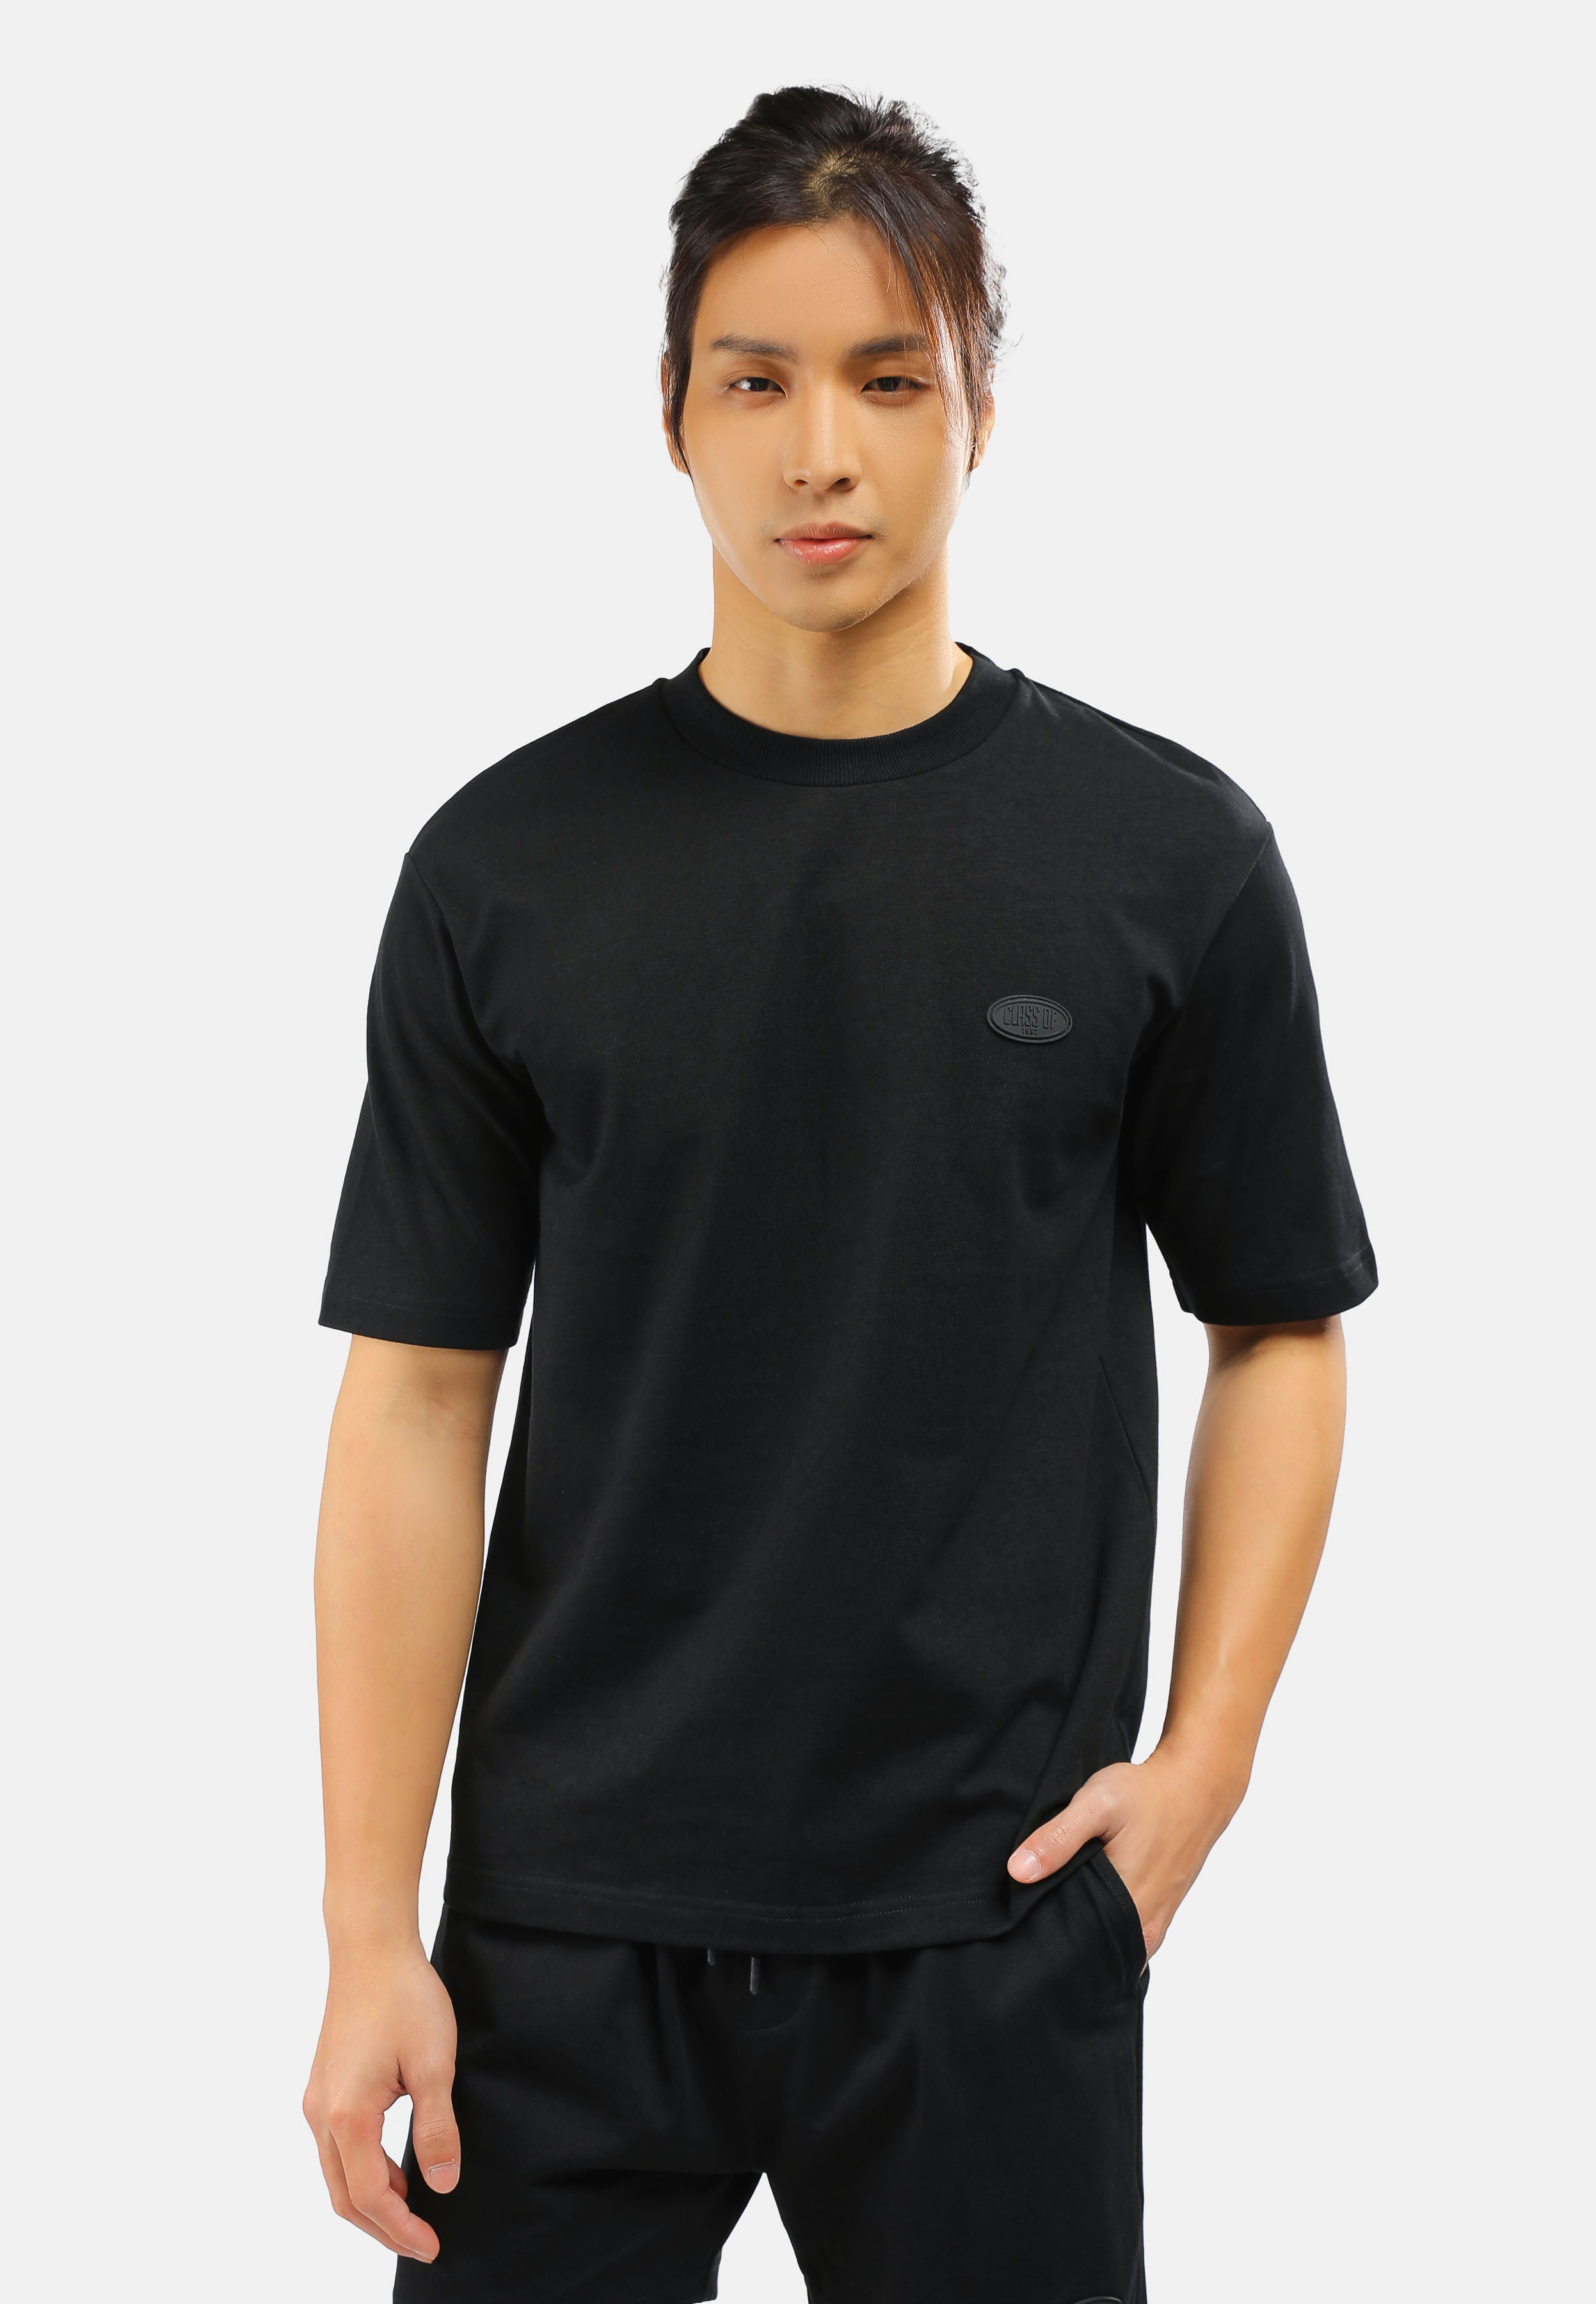 CHEETAH Men Basic Short Sleeves T-Shirt - 99096 (LM)